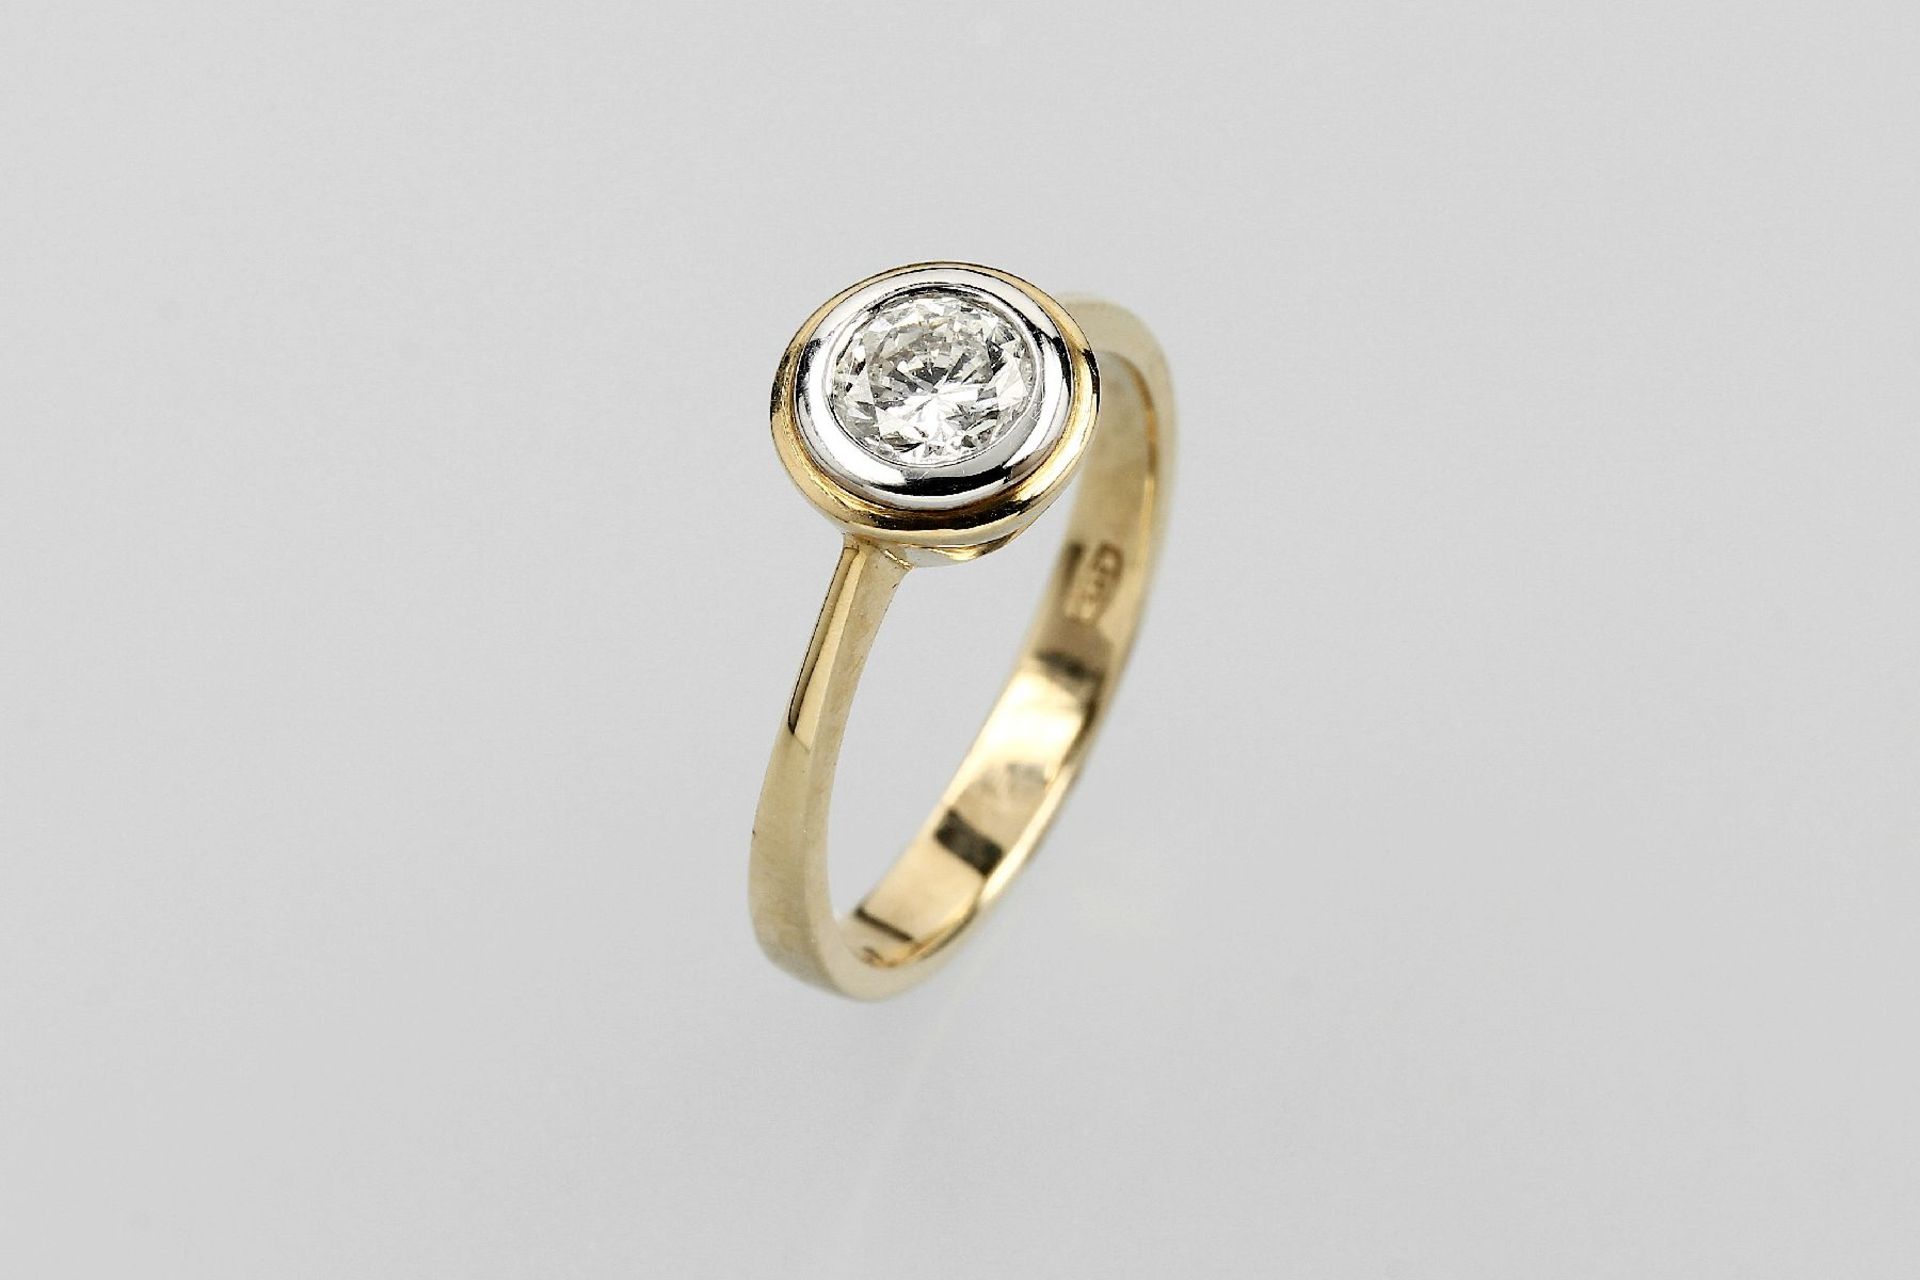 18 kt Gold Ring mit Brillant, GG/WG 750/000, mittig Brillant ca. 0.59 ct Weiß/si, in WG gefasst,